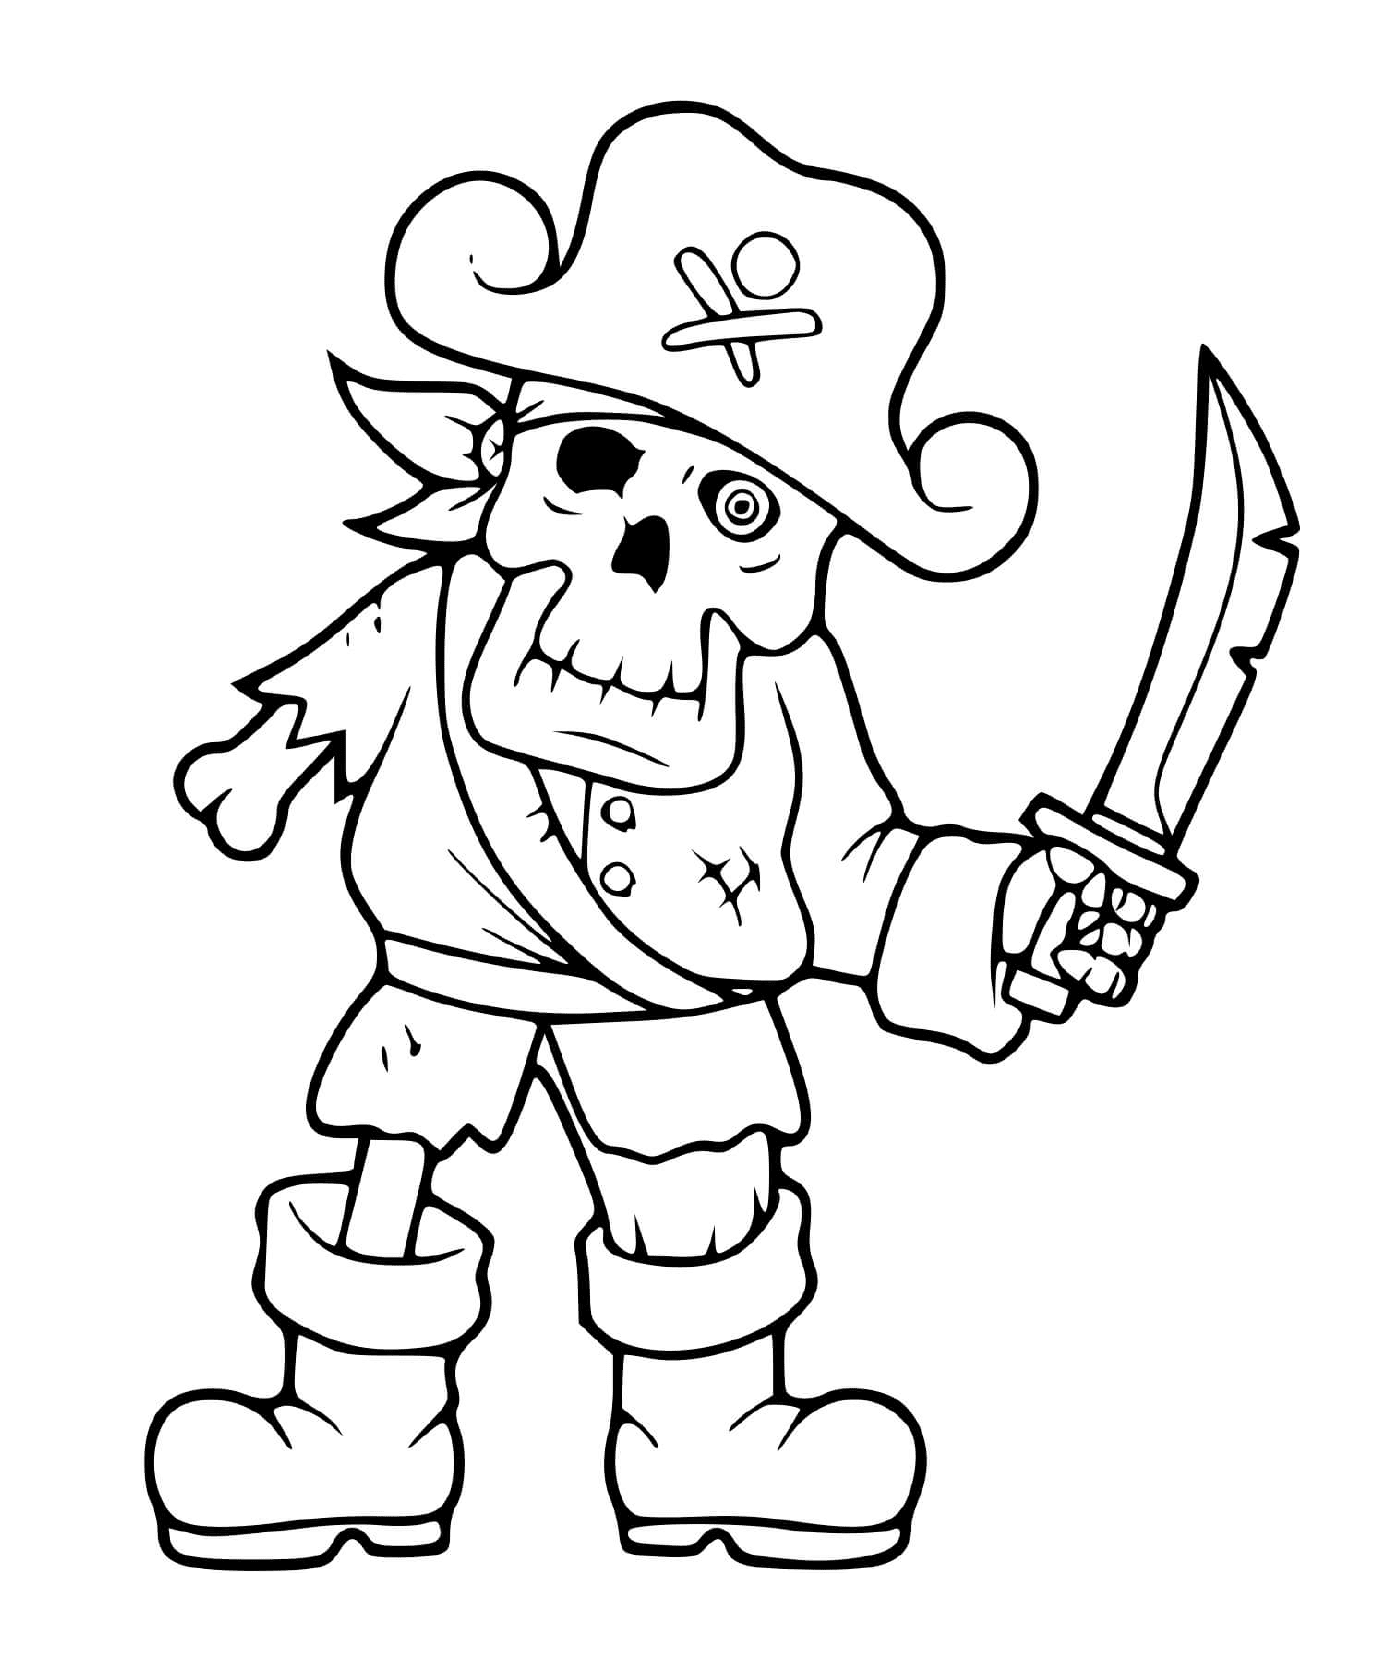  Страшный пиратский скелет 